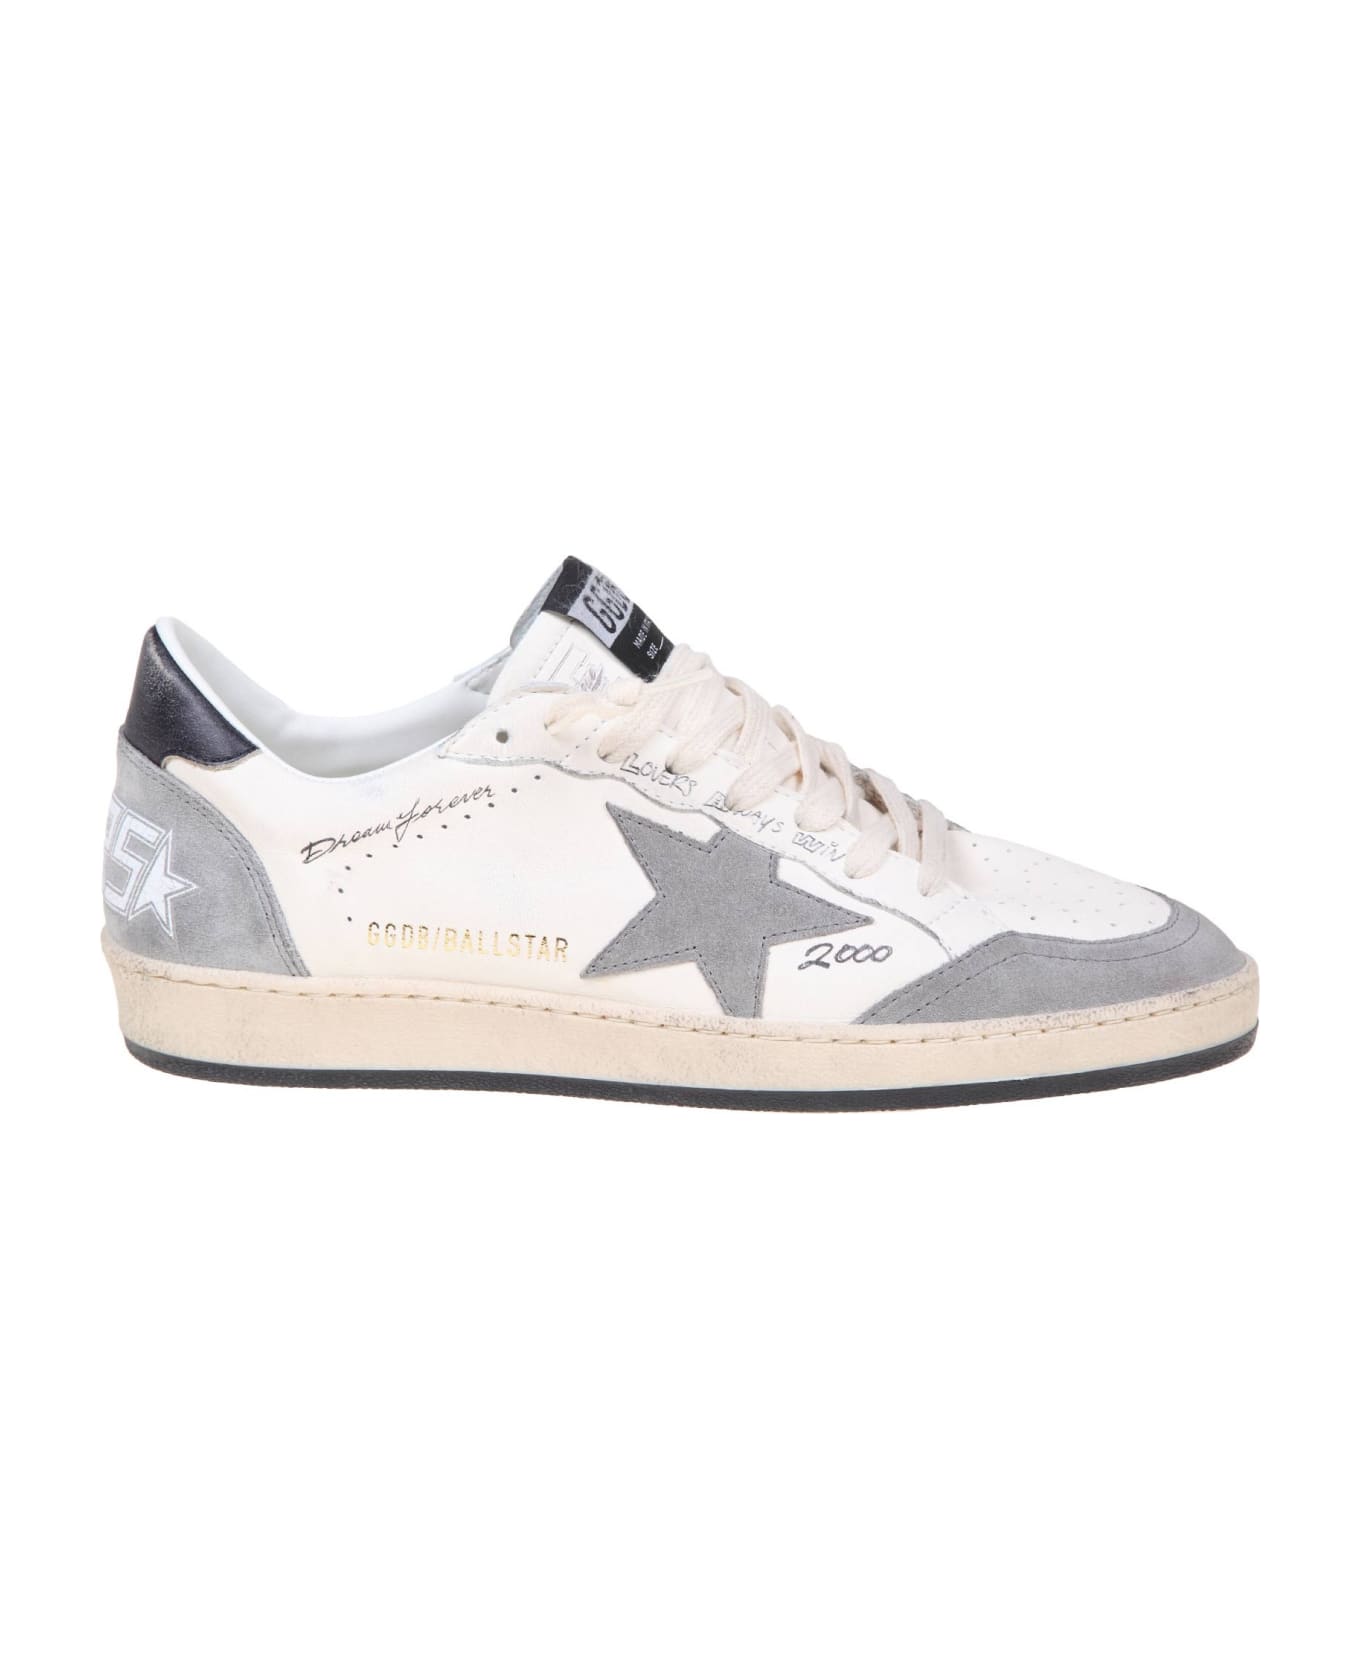 Golden Goose Ball Star Sneakers - White/Grey スニーカー